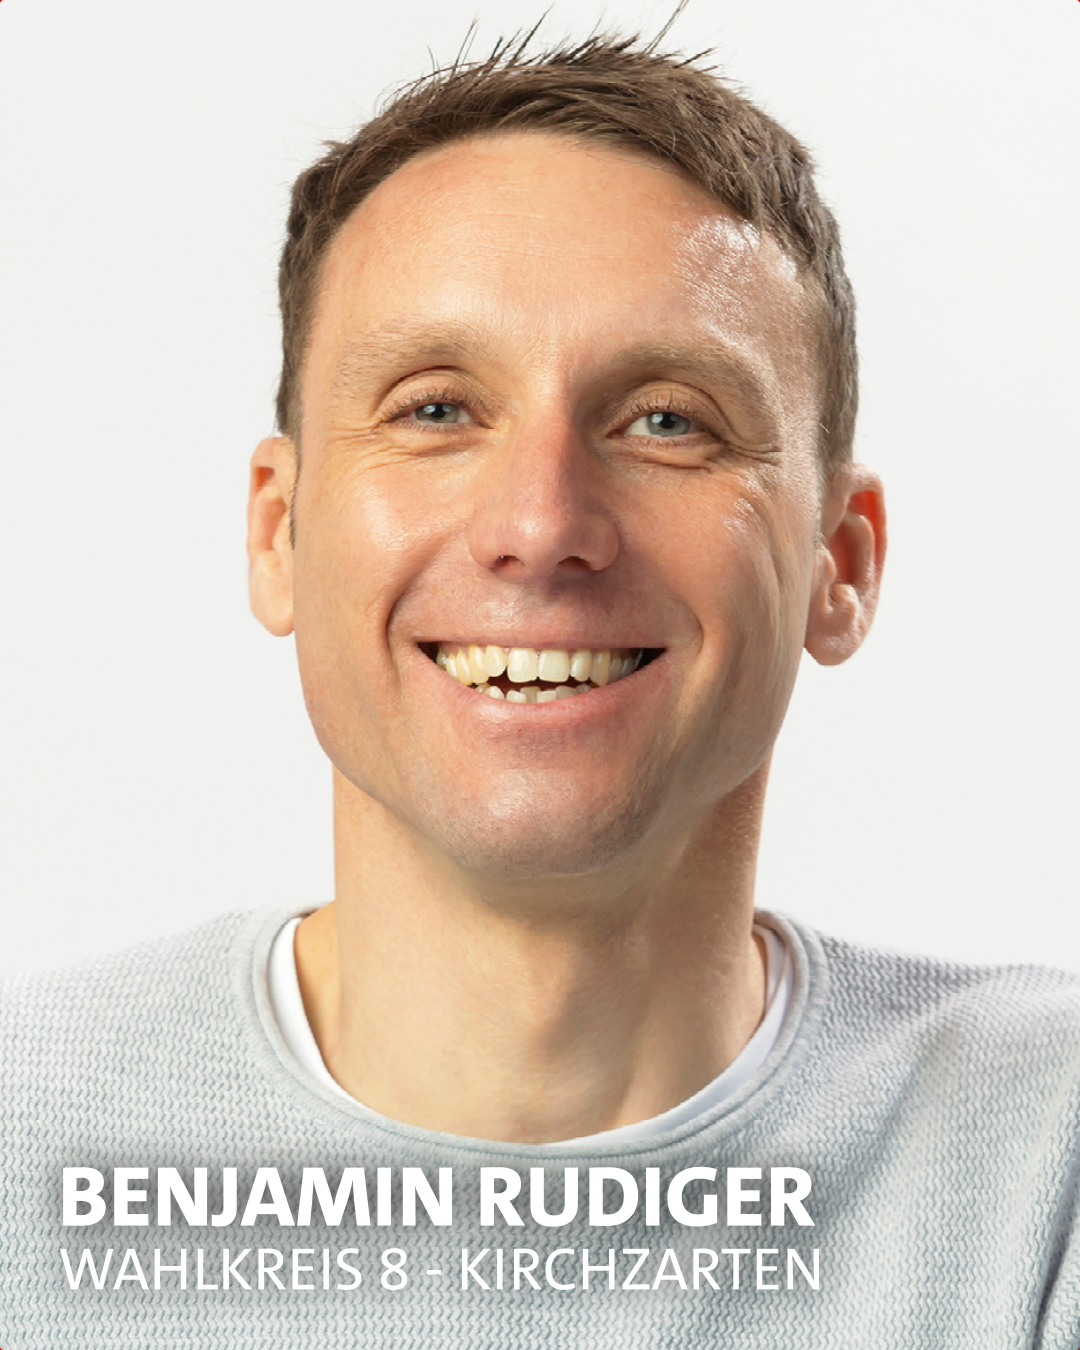 Benjamin Rudiger